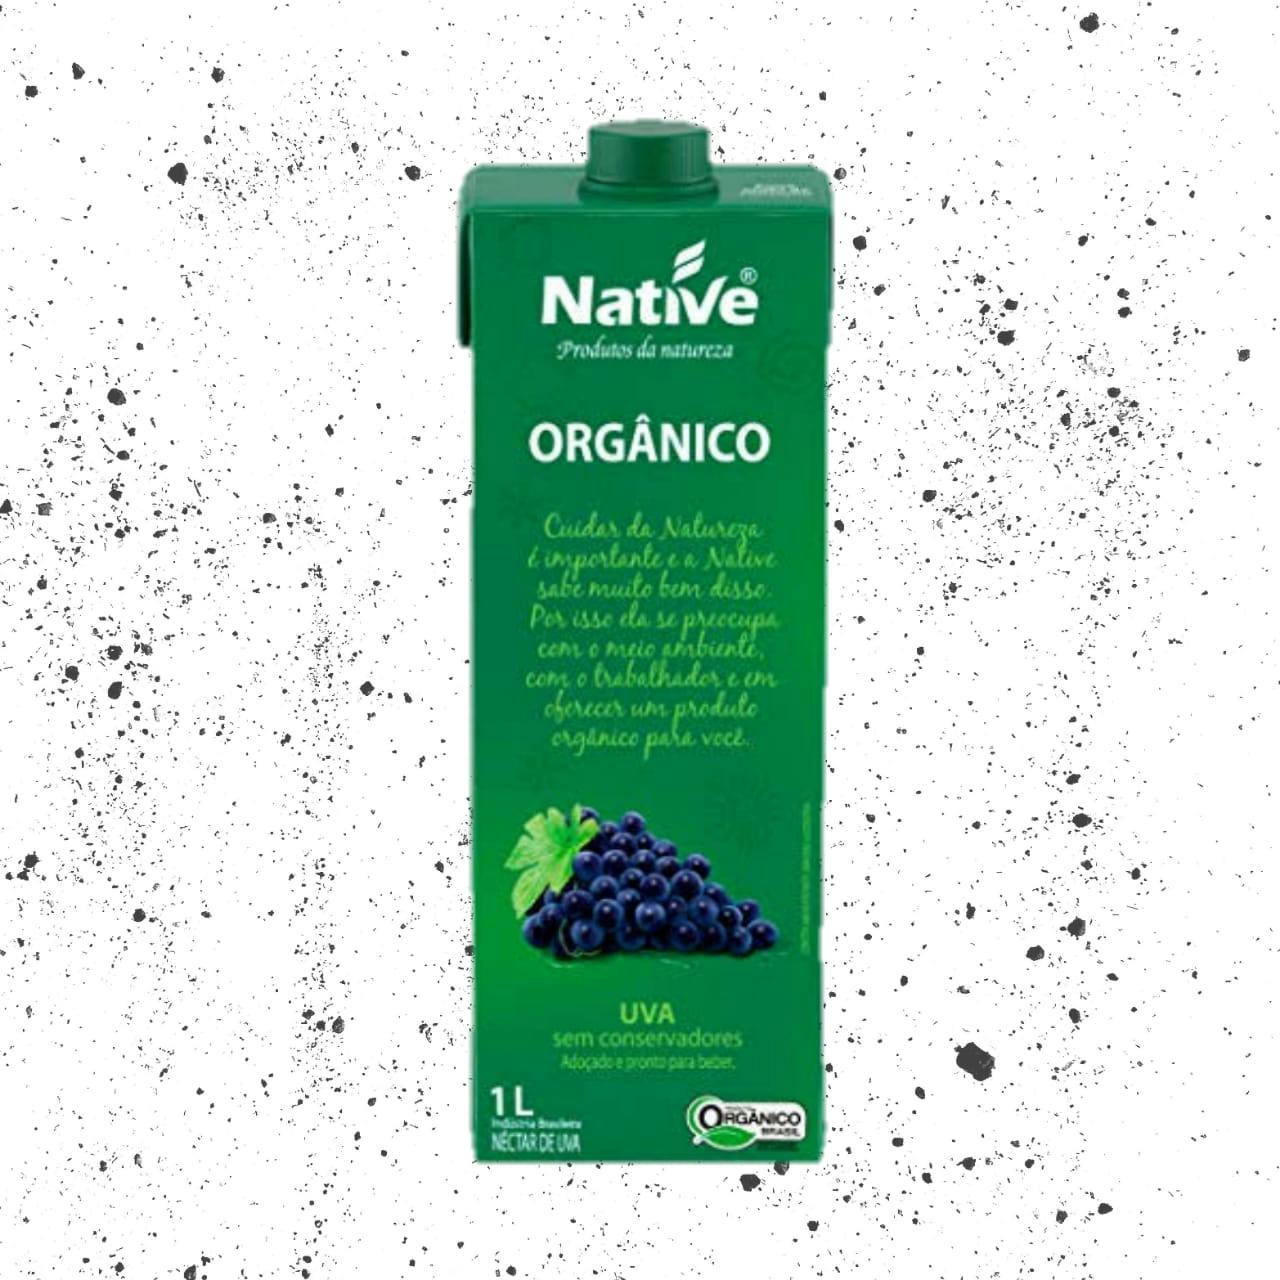 Néctar de Uva Orgânica 1L - Native